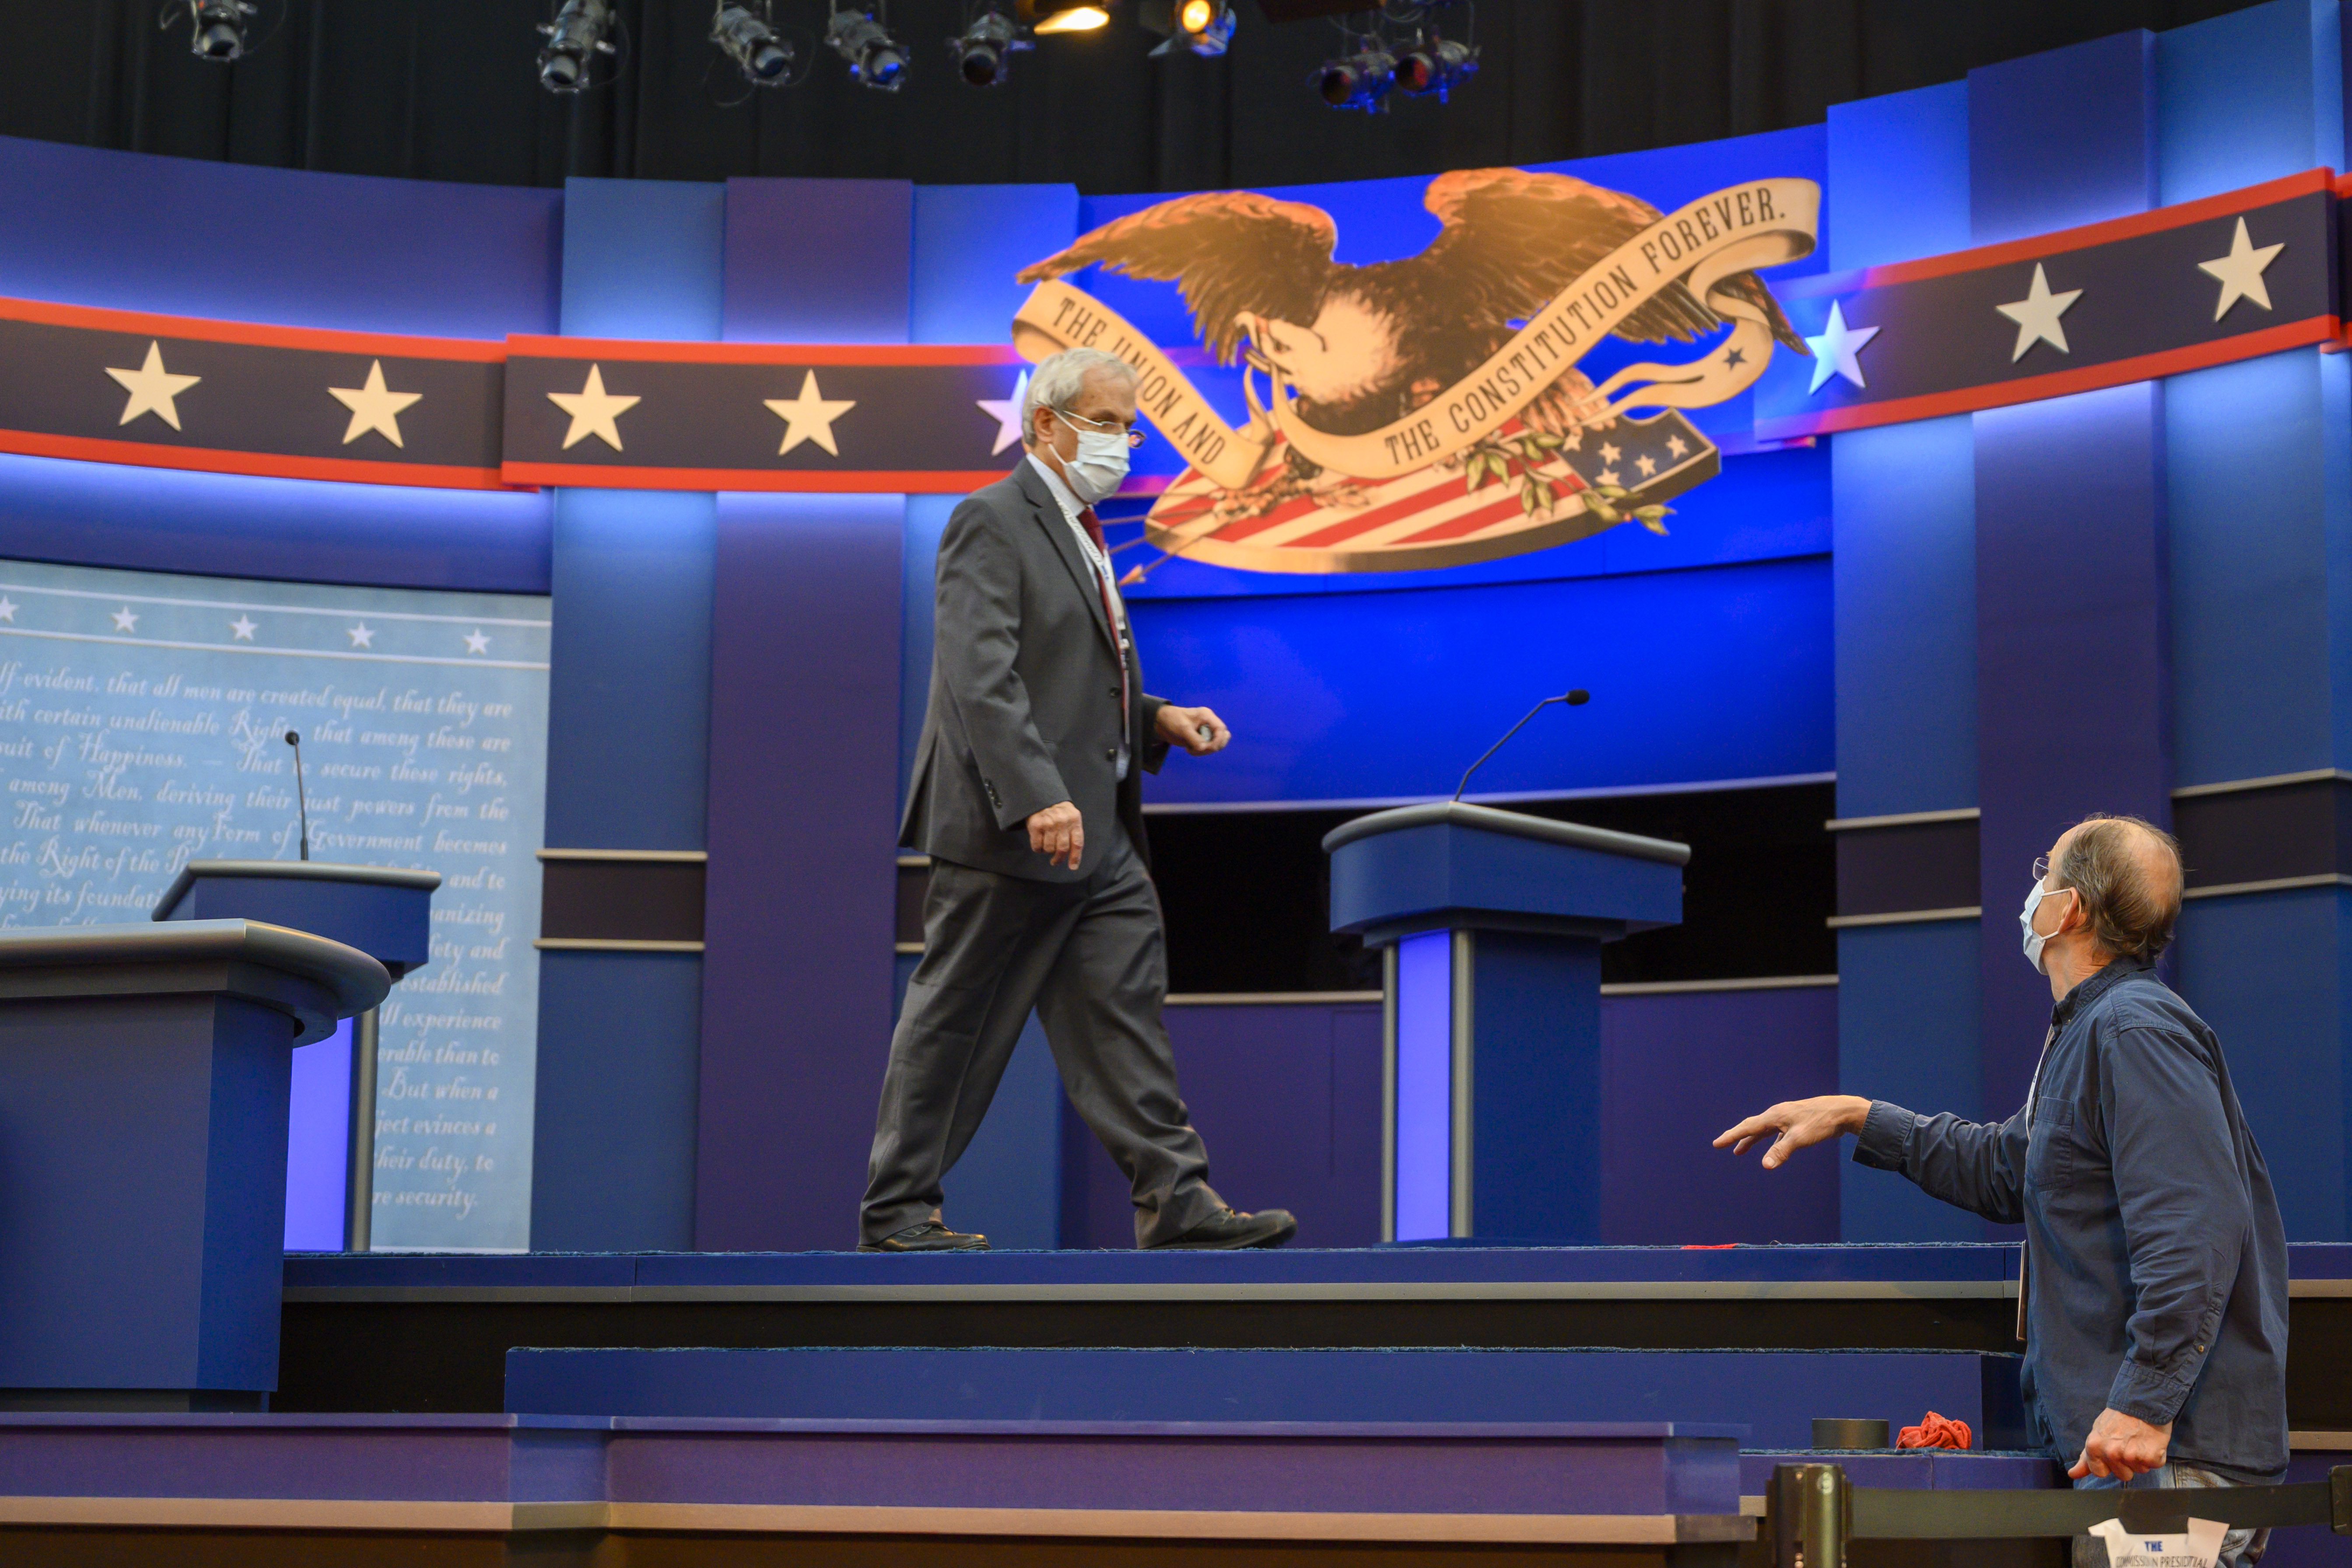 Todo listo para el primer debate presidencial entre Trump y Biden (Fotos)